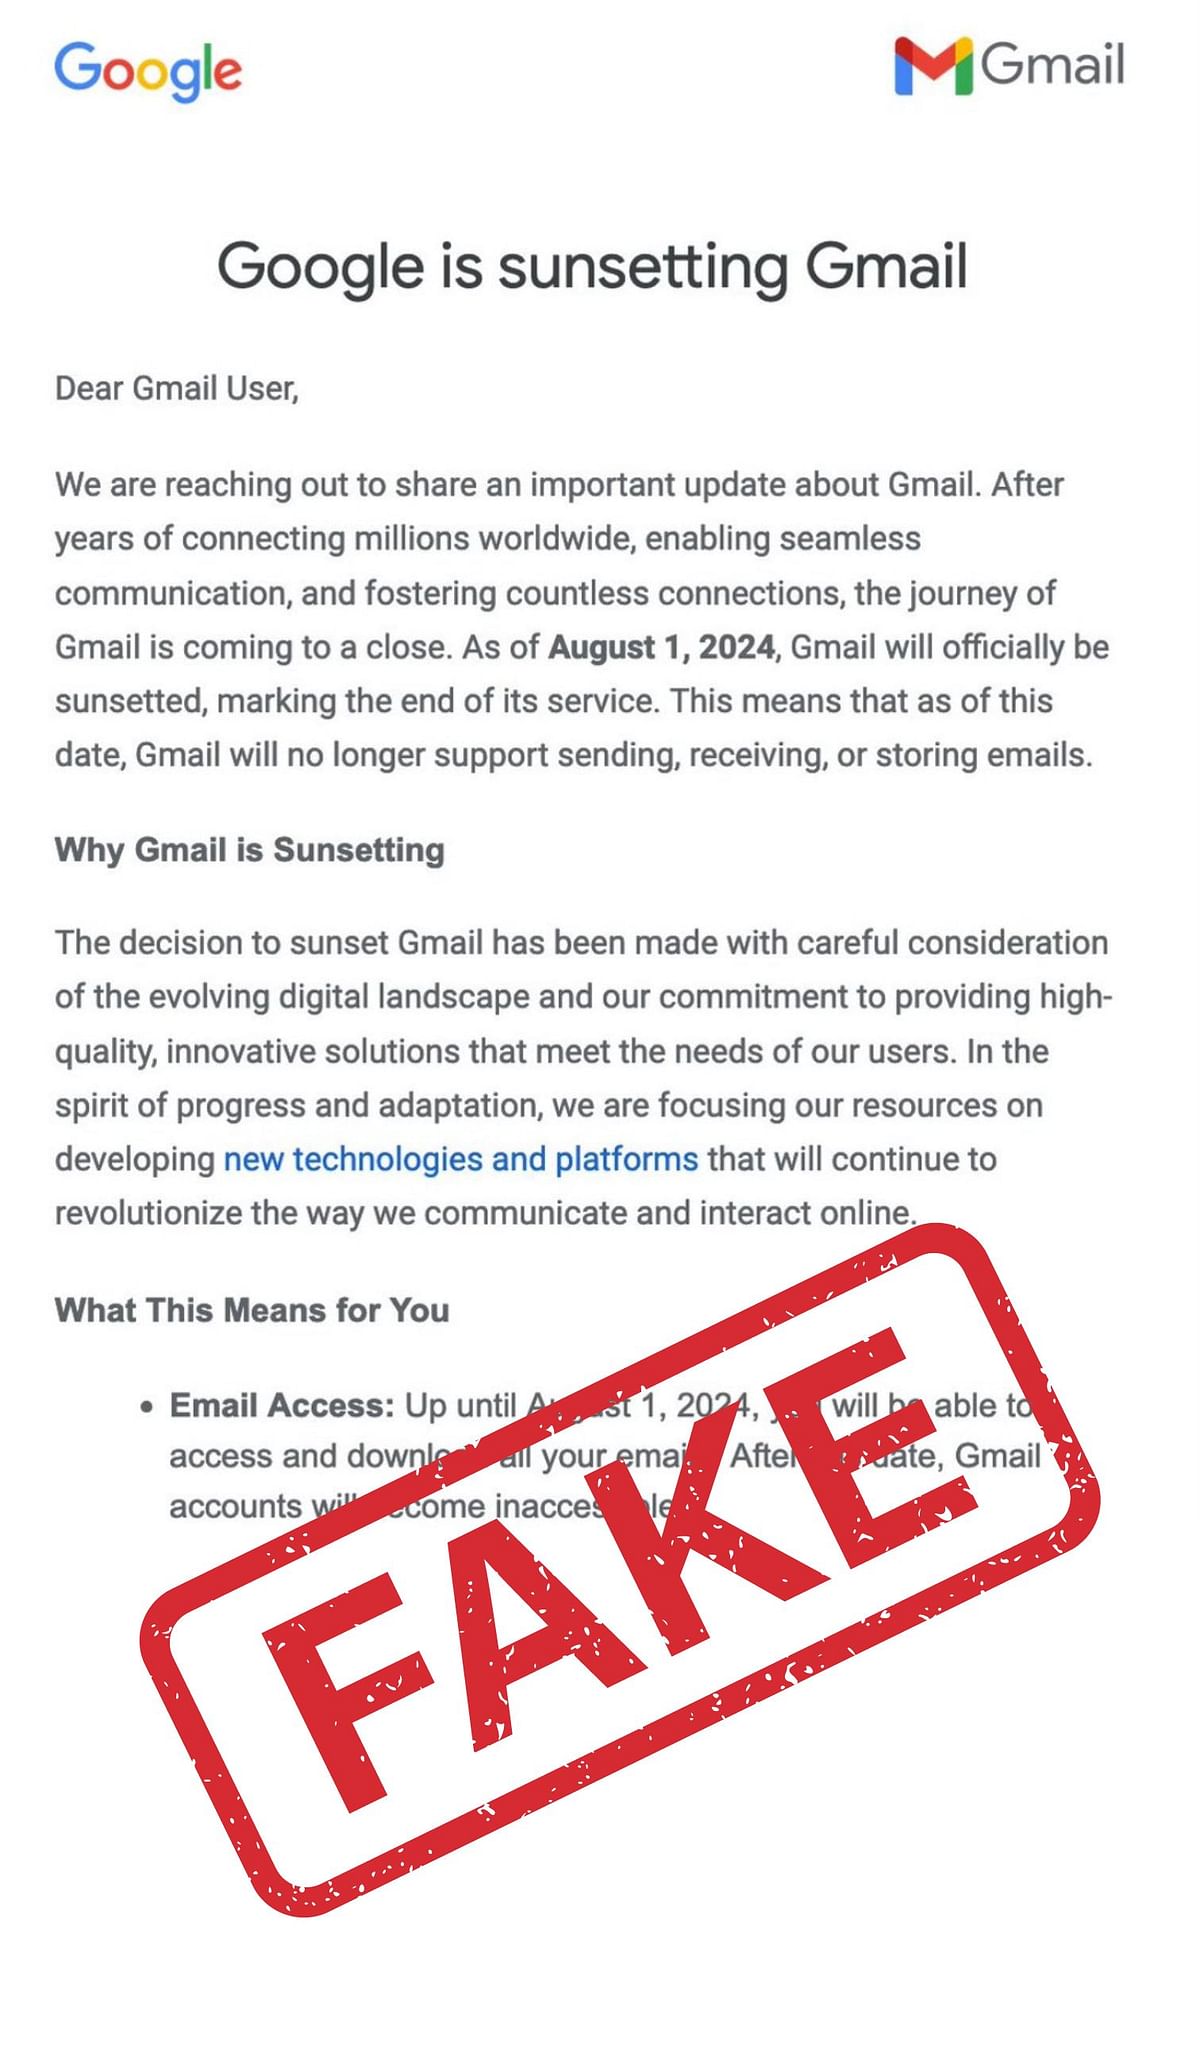 Fake News:सोशल मीडिया पर गूगल की ईमेल सर्विस, Gmail के बंद होने की फर्जी खबर फैल रही है. 